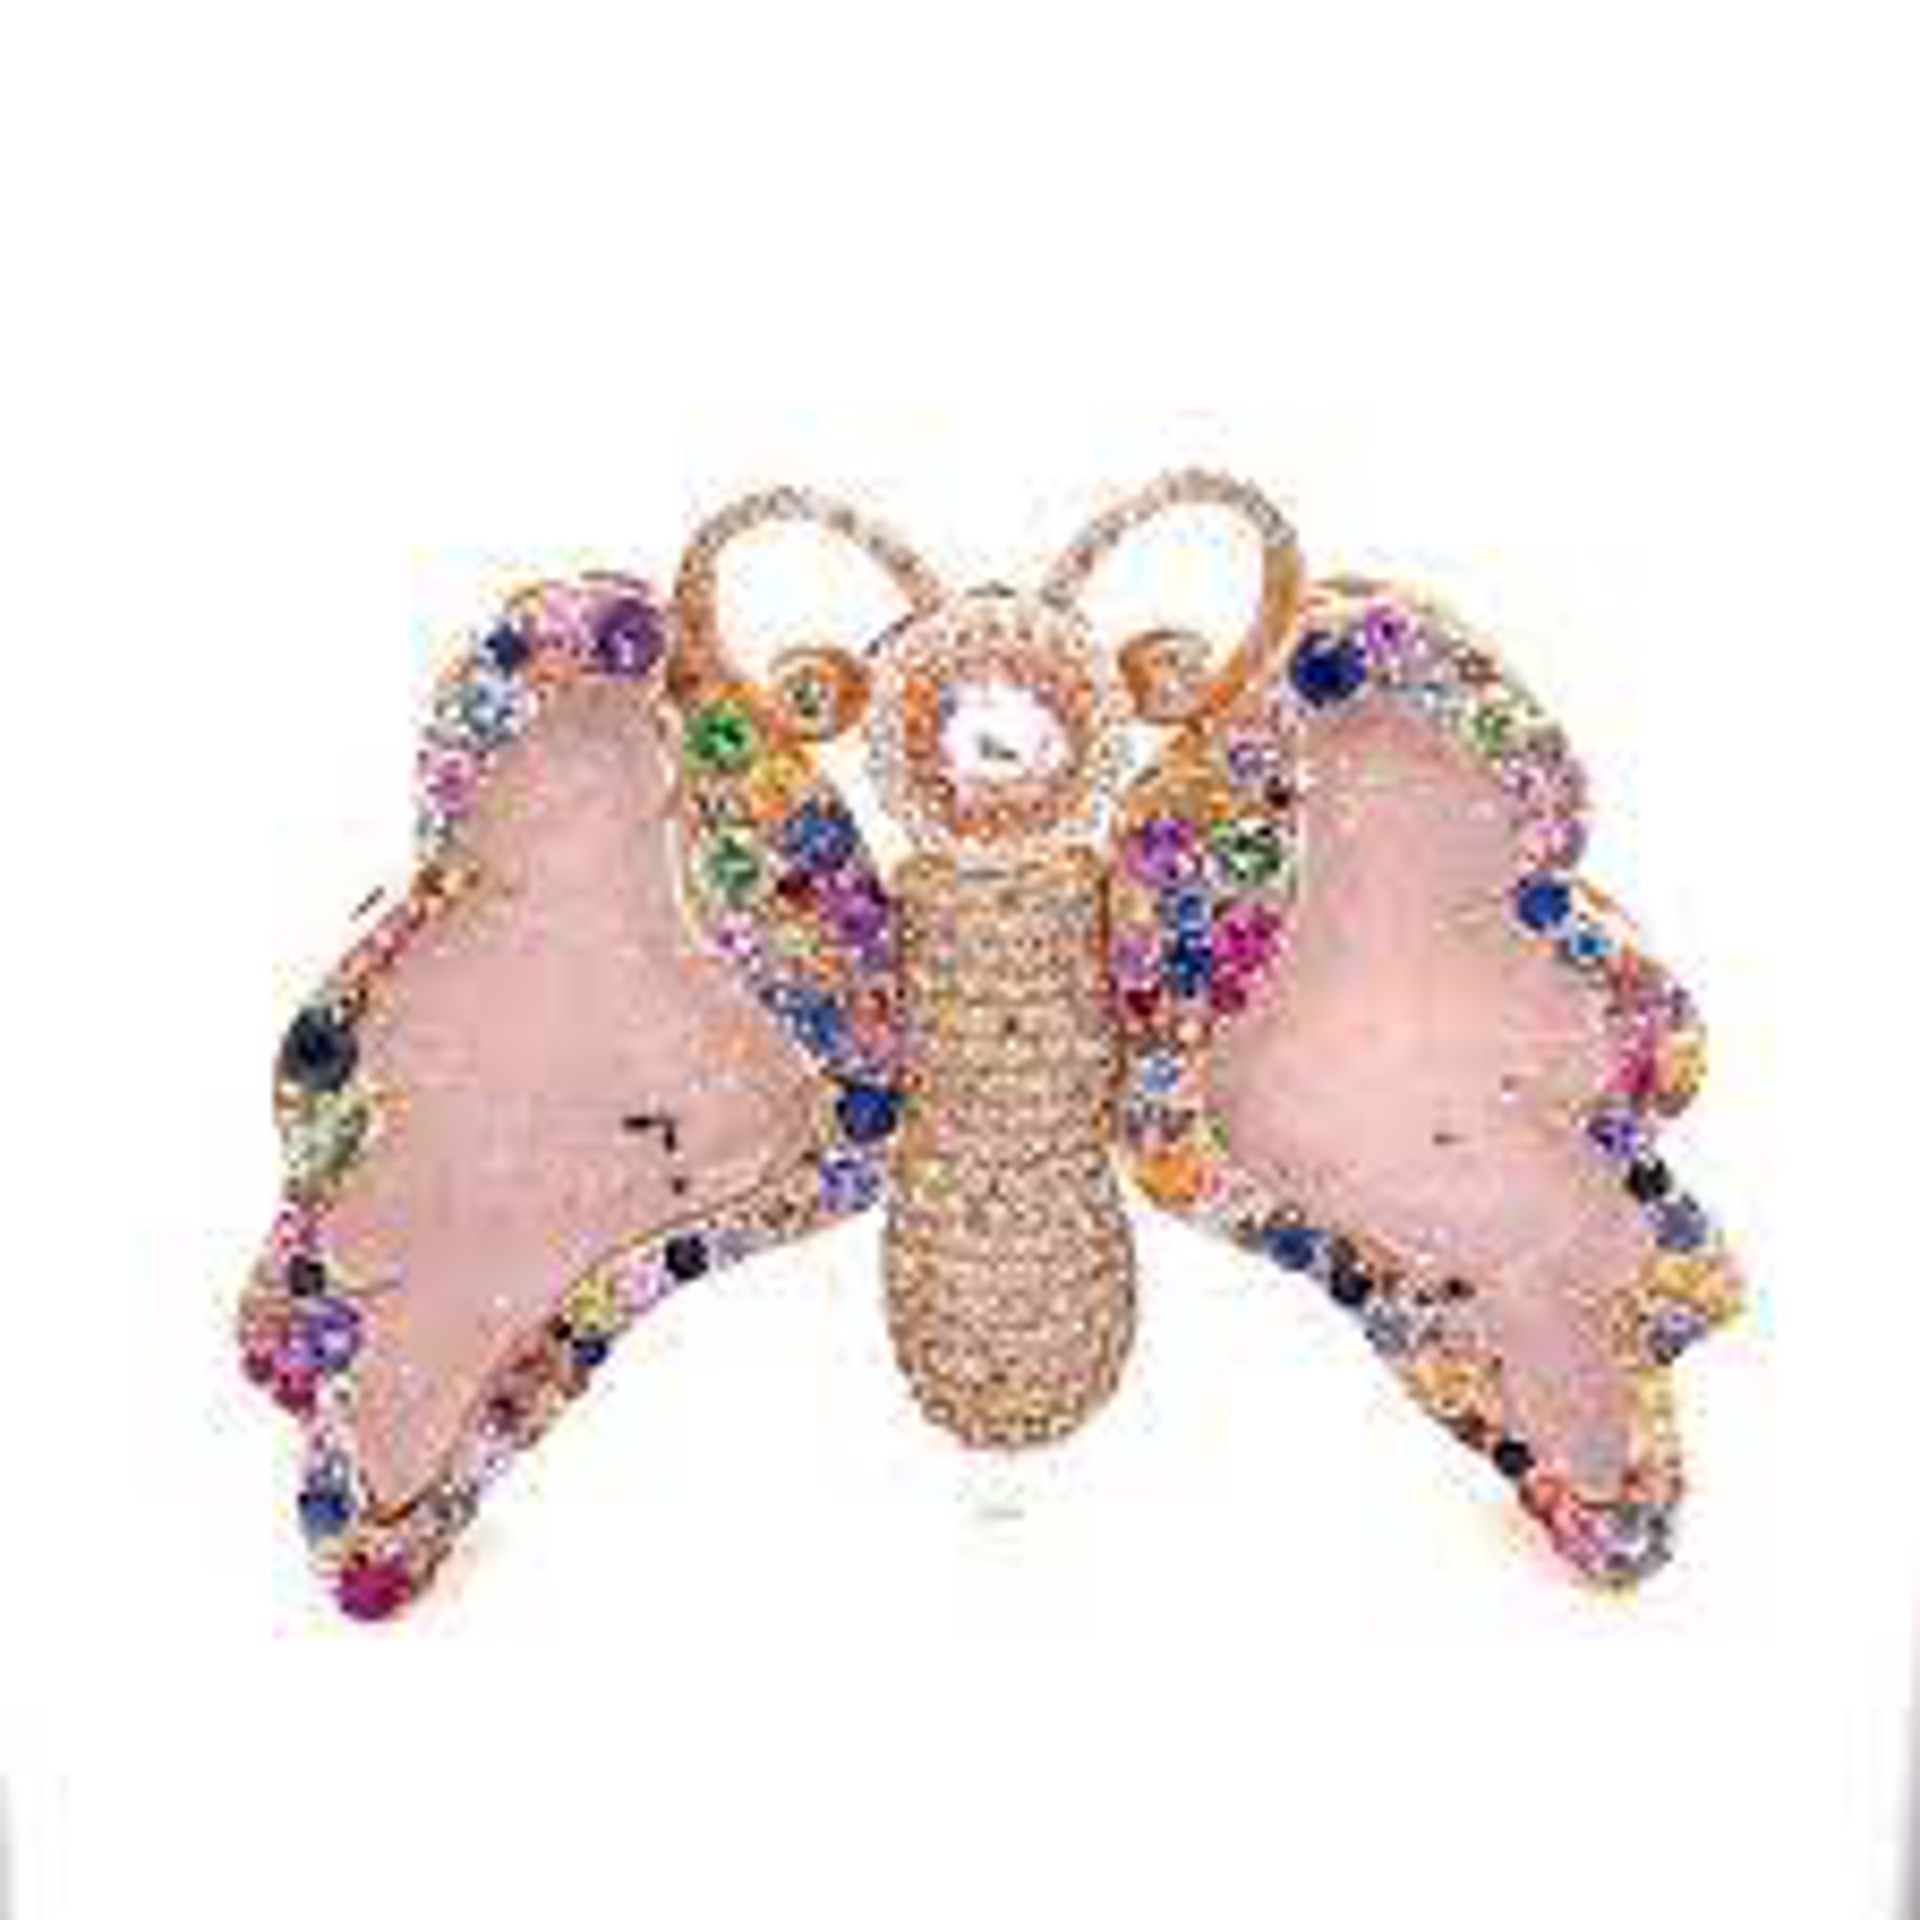 Jubilee Butterfly Clasp by Llyn Strong